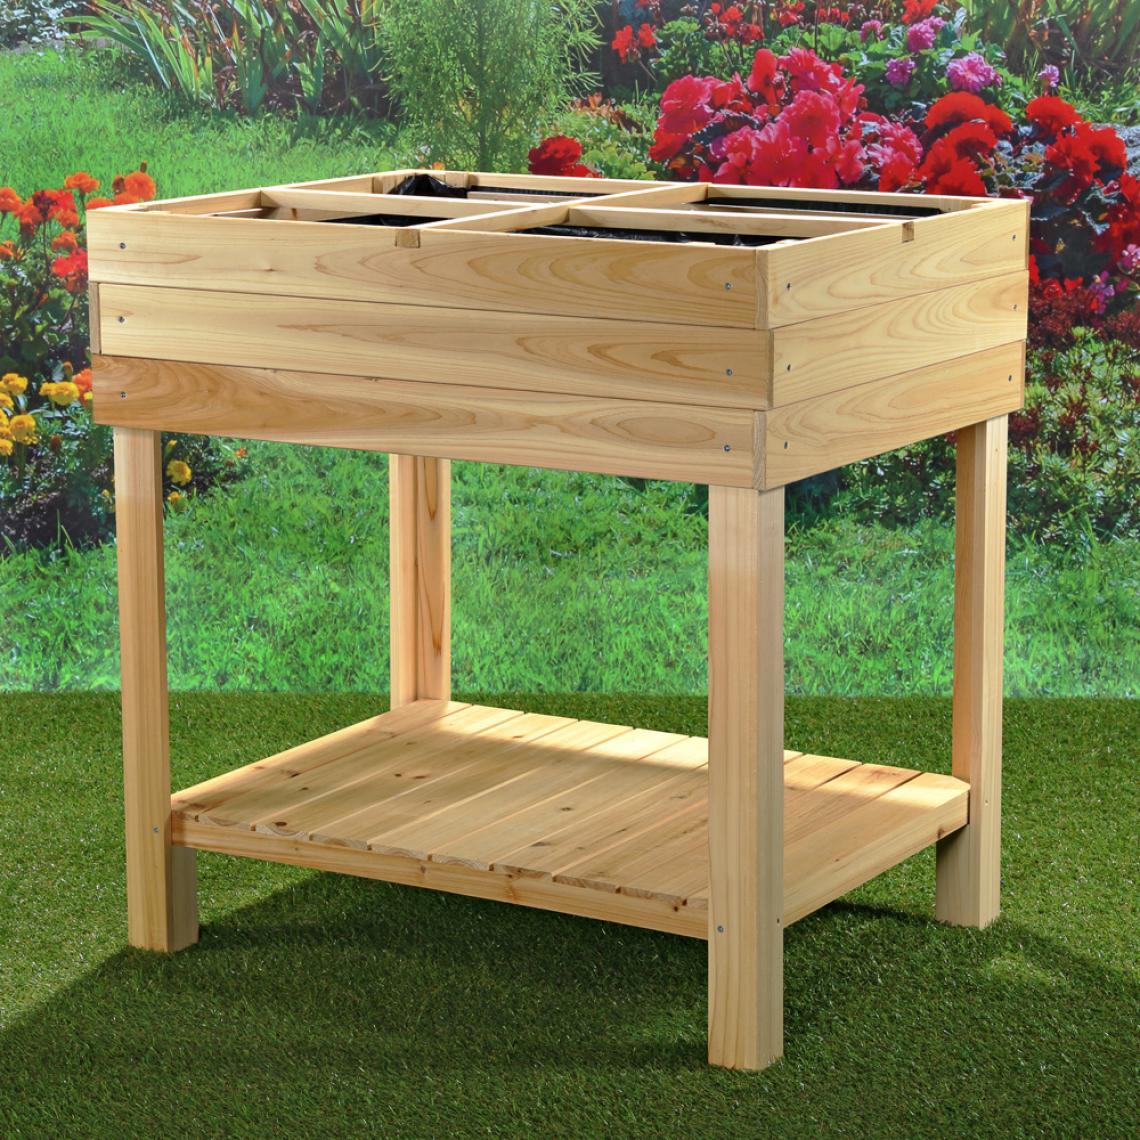 MercatoXL - Table à plantes / table à fleurs / table de jardinier en bois - Poterie, bac à fleurs